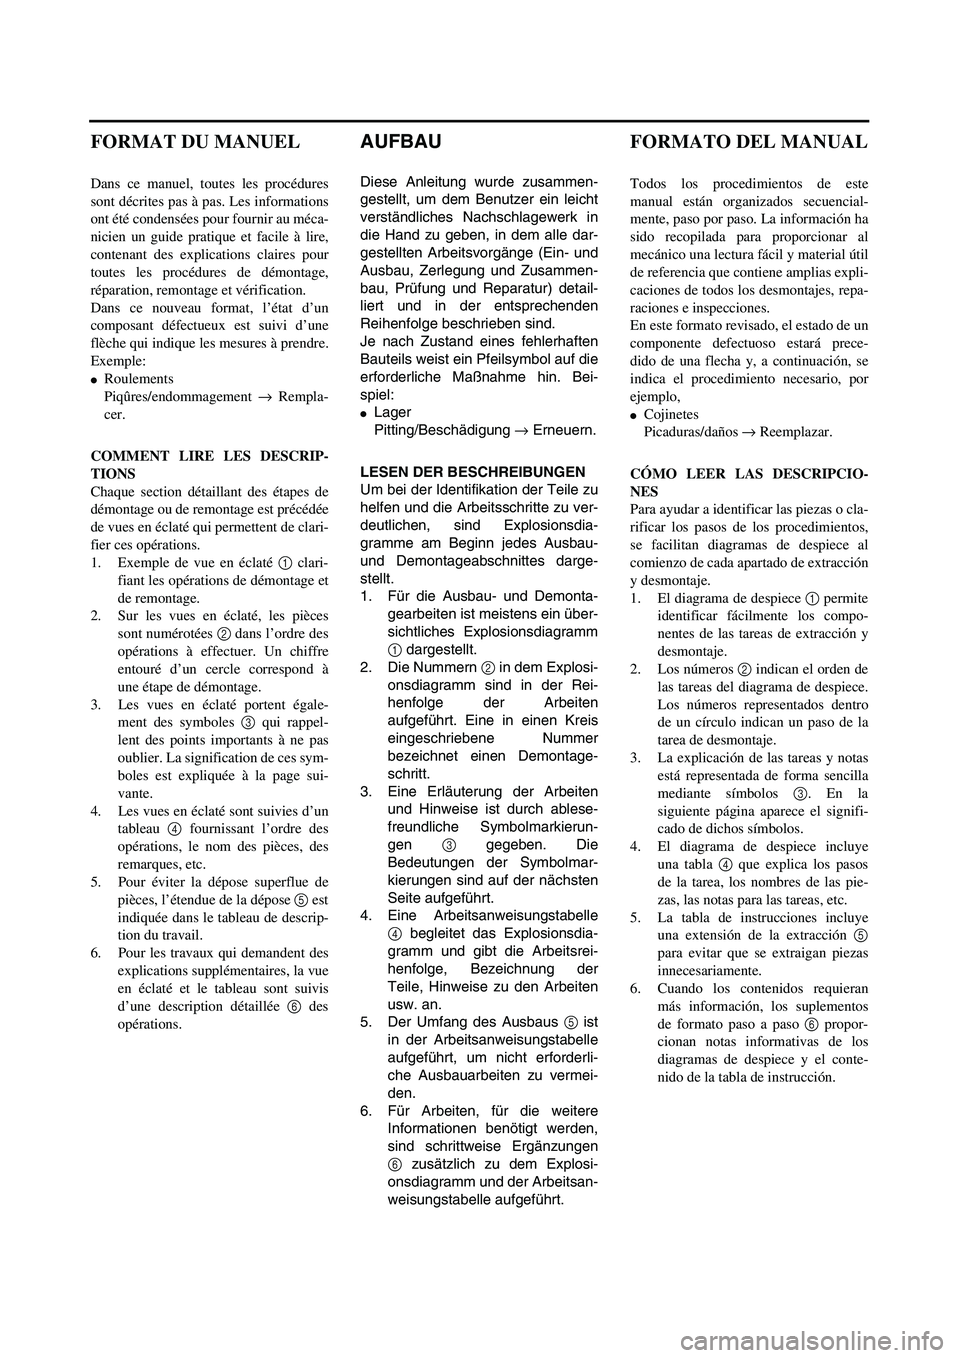 YAMAHA WR 450F 2003  Notices Demploi (in French)  
AUFBAU 
Diese Anleitung wurde zusammen-
gestellt, um dem Benutzer ein leicht
verständliches Nachschlagewerk in
die Hand zu geben, in dem alle dar-
gestellten Arbeitsvorgänge (Ein- und
Ausbau, Zerl